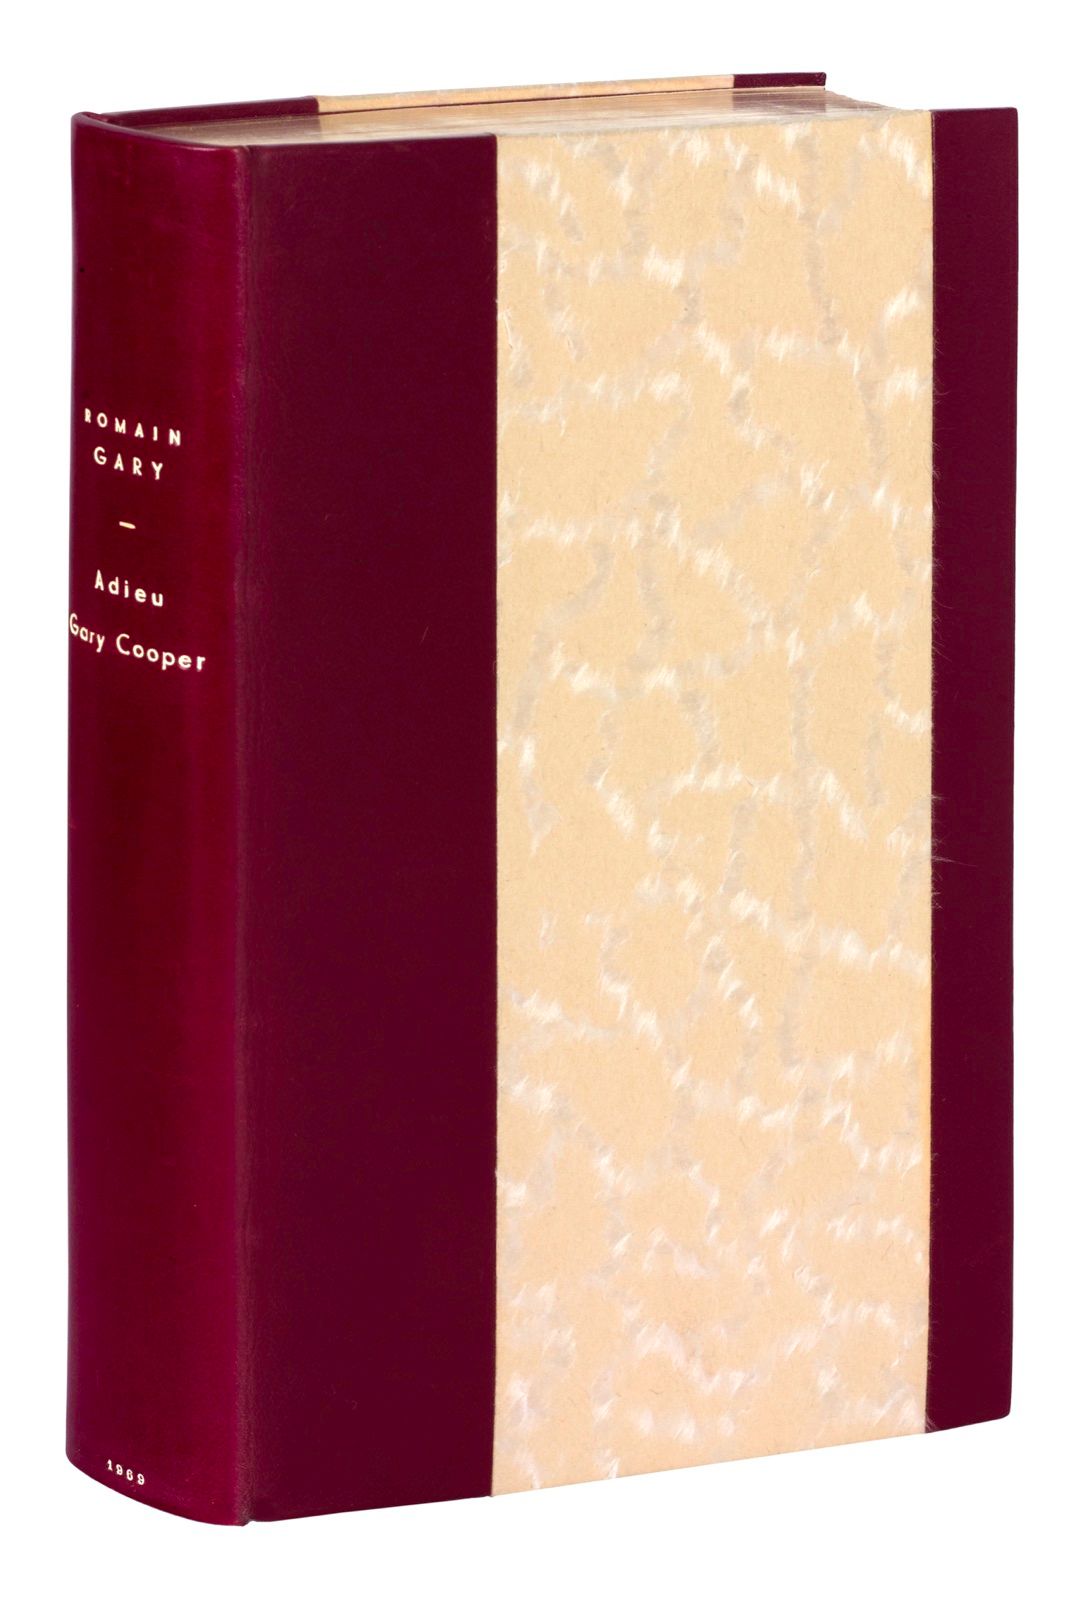 GARY (Romain). 告别加里-库珀。巴黎，Gallimard，1969。8开本，酒红色半盒带，光滑的书脊上有白色的标题，头部镀金，封面和书脊未作修饰，&hellip;